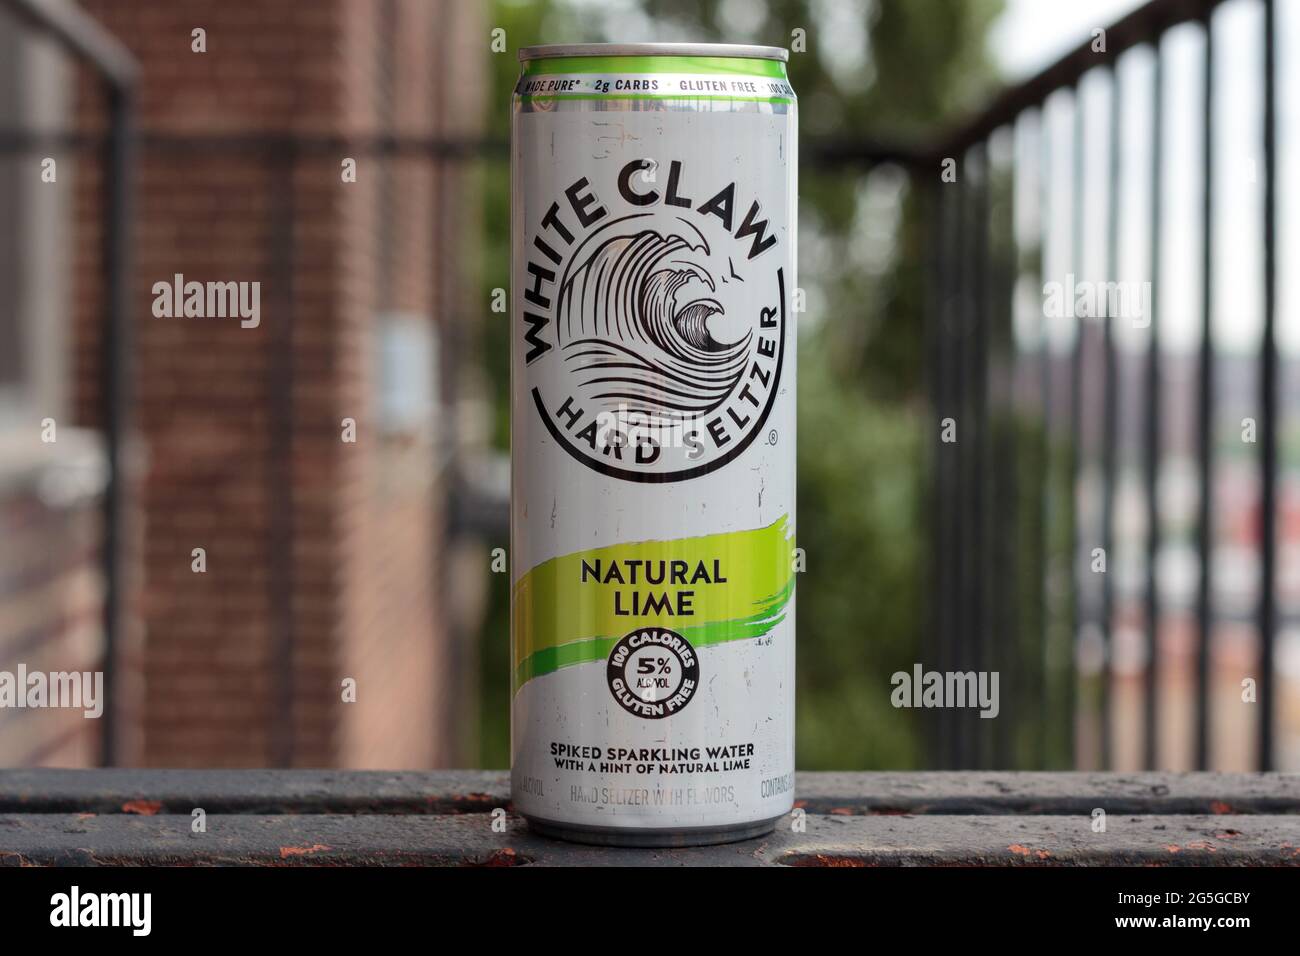 Dose von White Claw Marke harten Seltzer, Spikes Mineralwasser, Limette aromatisiert, 5 Prozent Alkohol, auf einer Feuertreppe Stockfoto